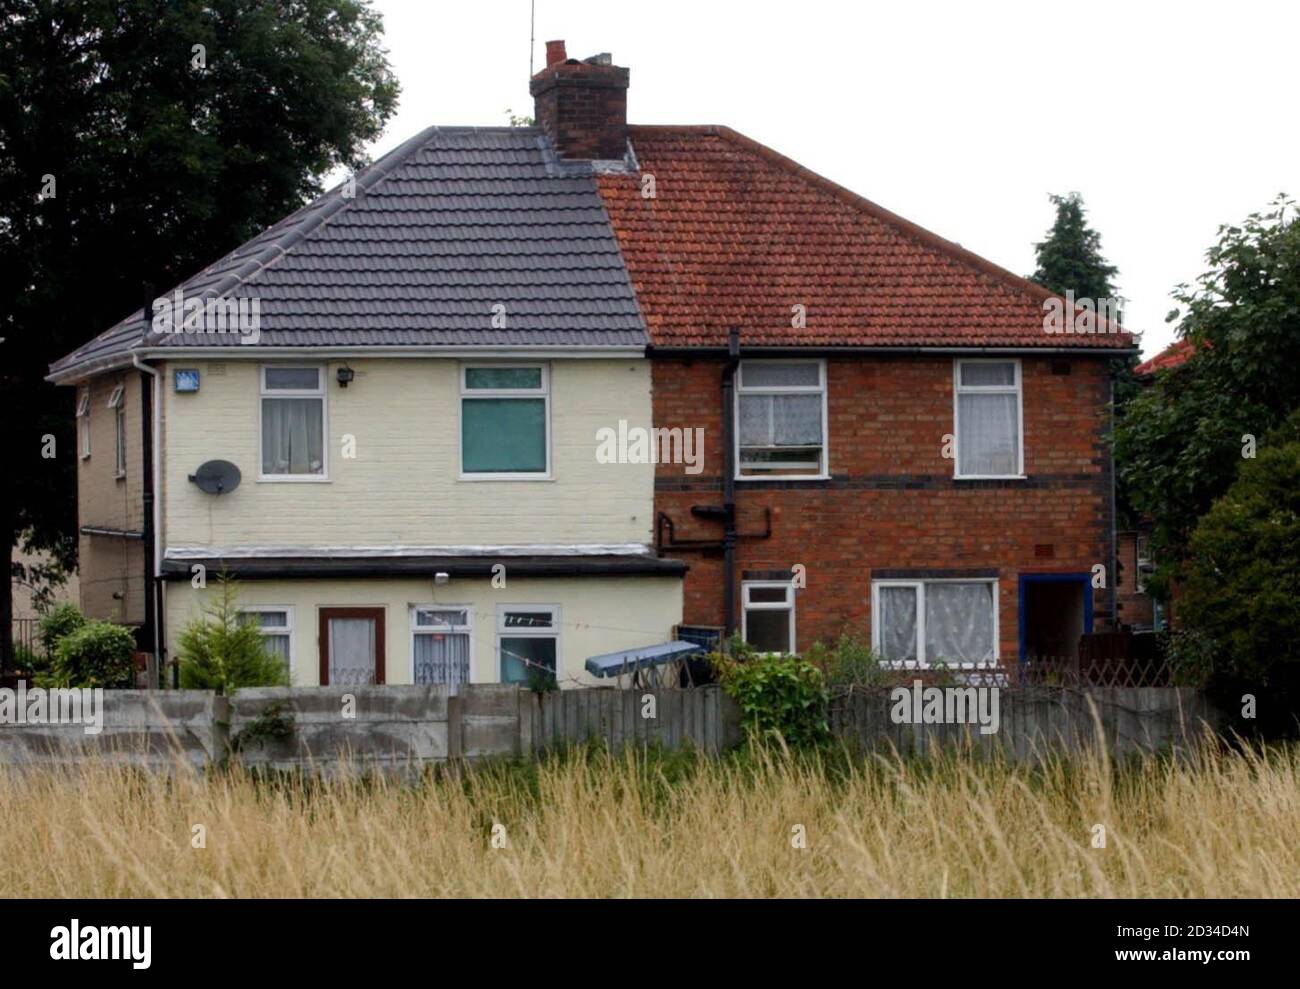 La maison, à droite, à Heybarnes Road, où les détectives enquêtant sur les attentats à la bombe échoués à Londres le 21 juillet, ont procédé à une arrestation en vertu de la loi de 2000 sur le terrorisme. Trois hommes ont été arrêtés à une autre adresse dans la ville. Banque D'Images